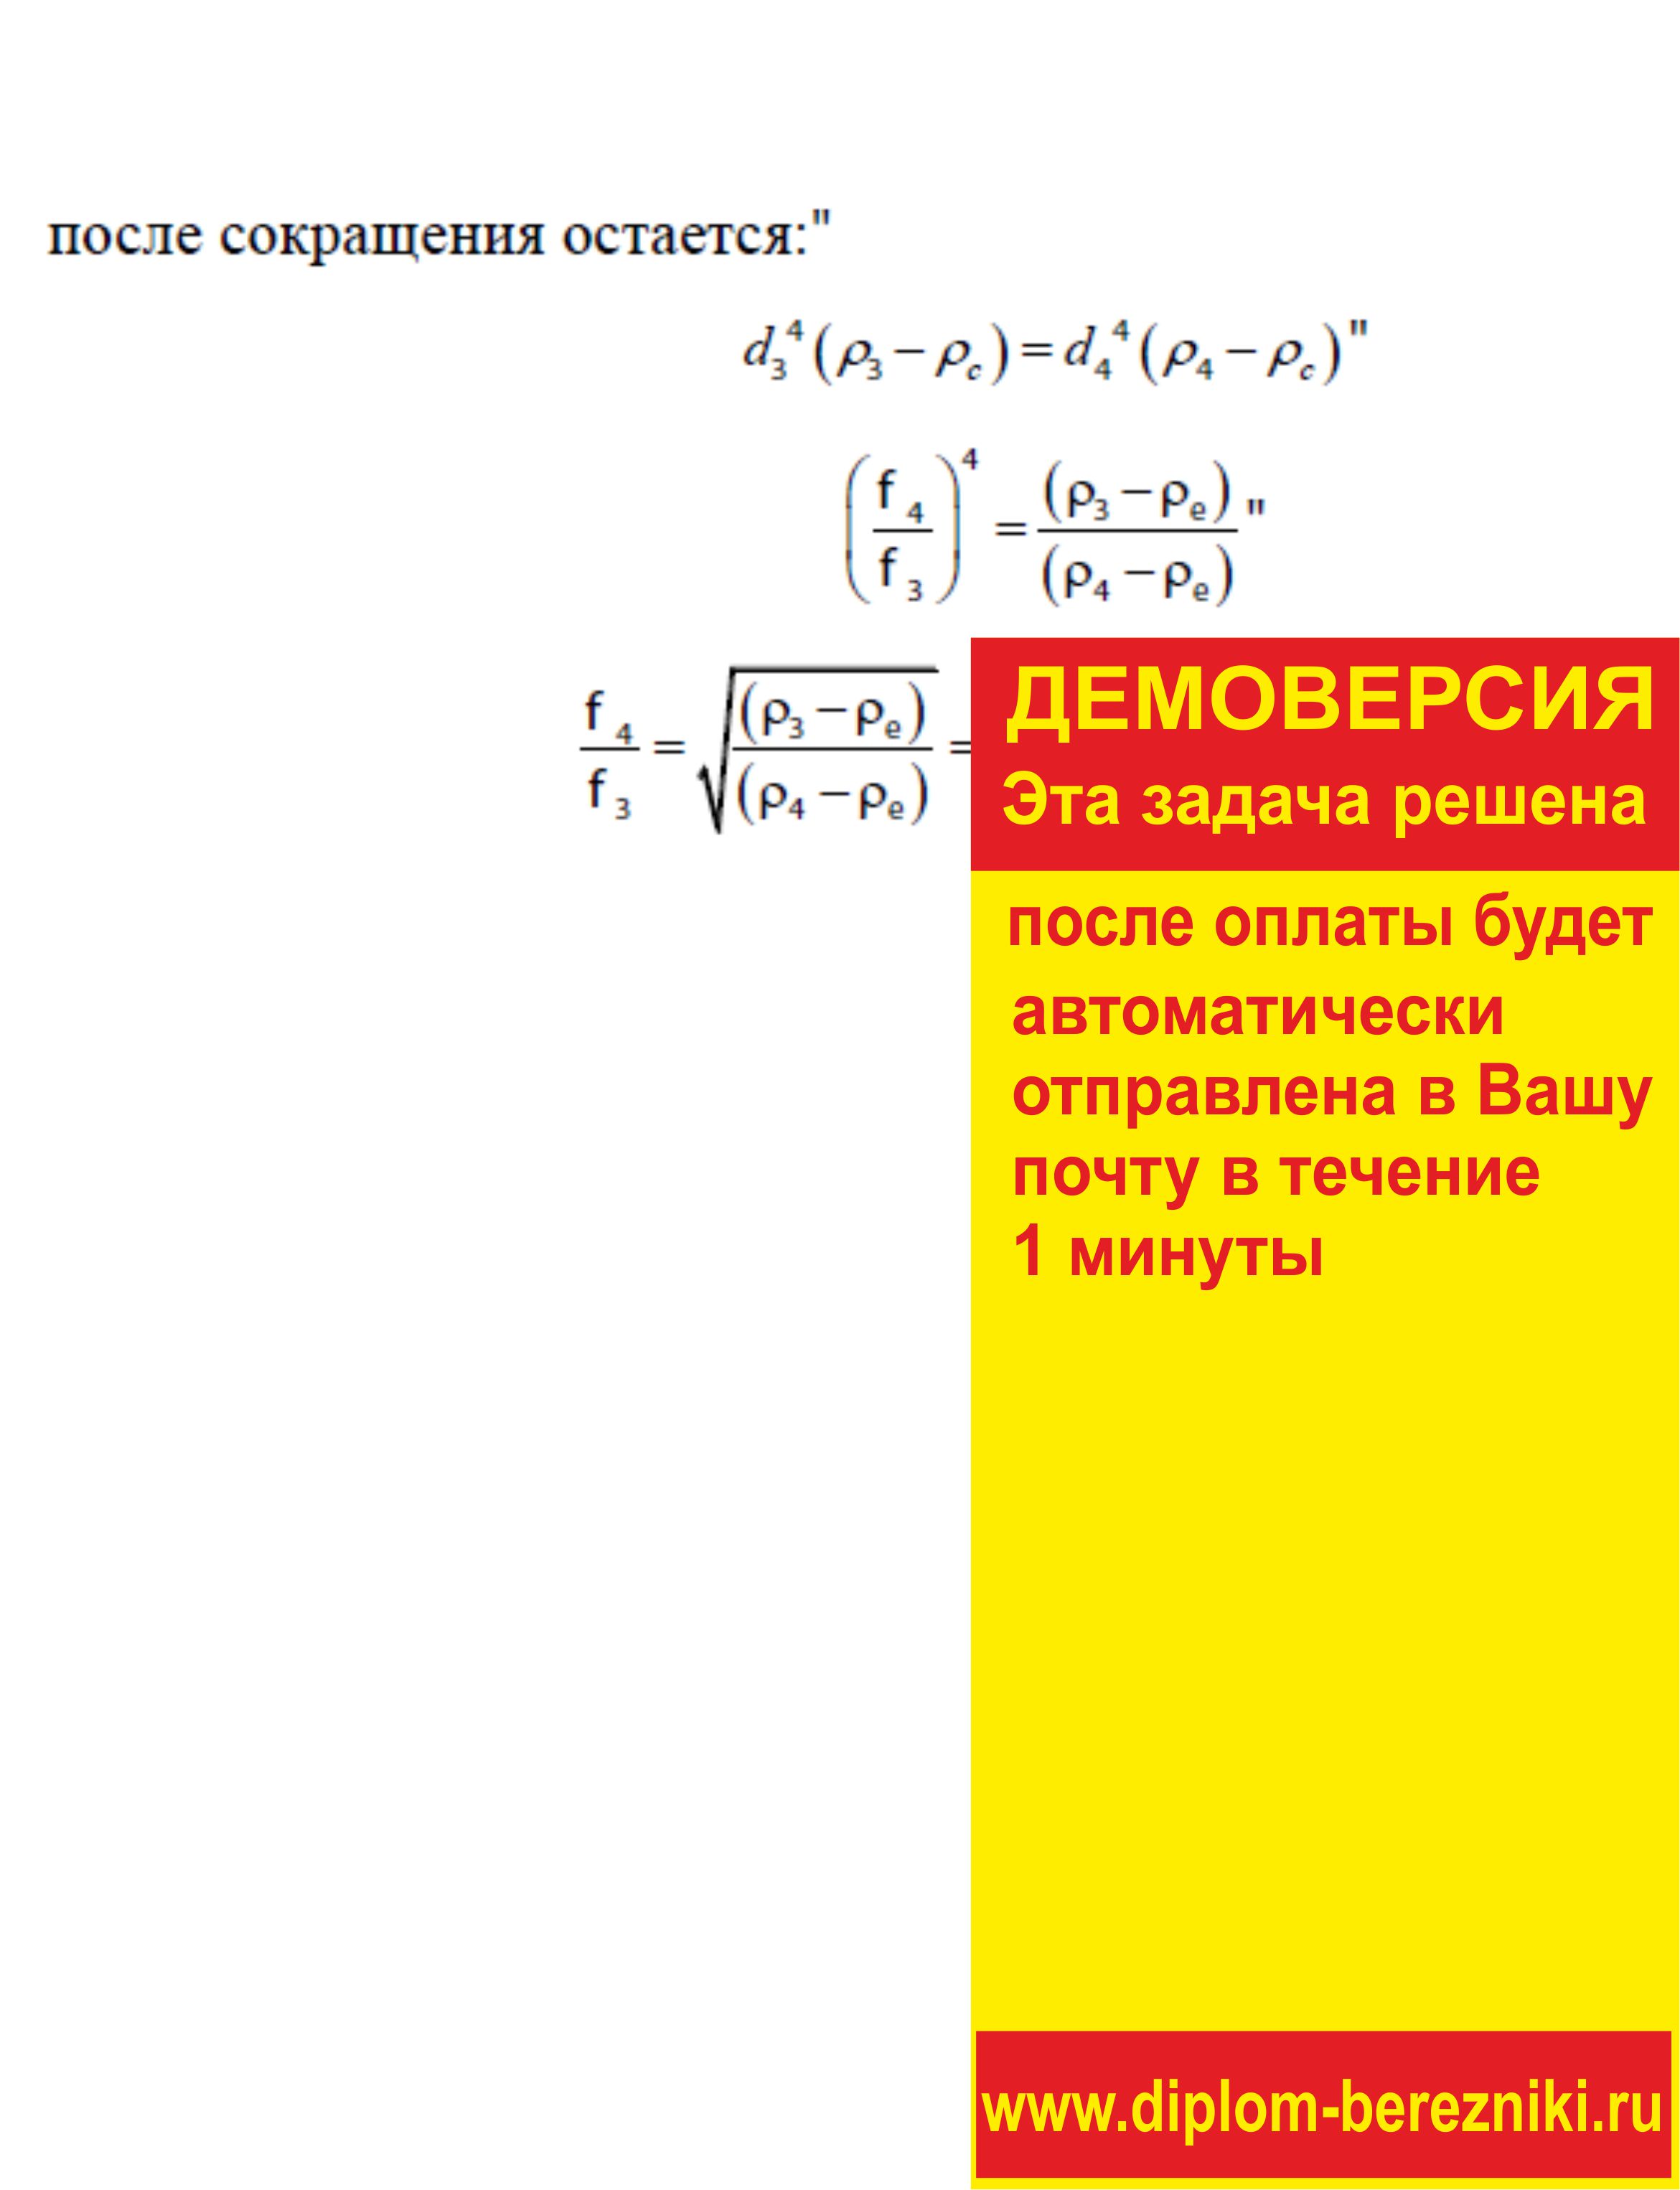 Решение задачи 3.1 по ПАХТ из задачника Павлова Романкова Носкова